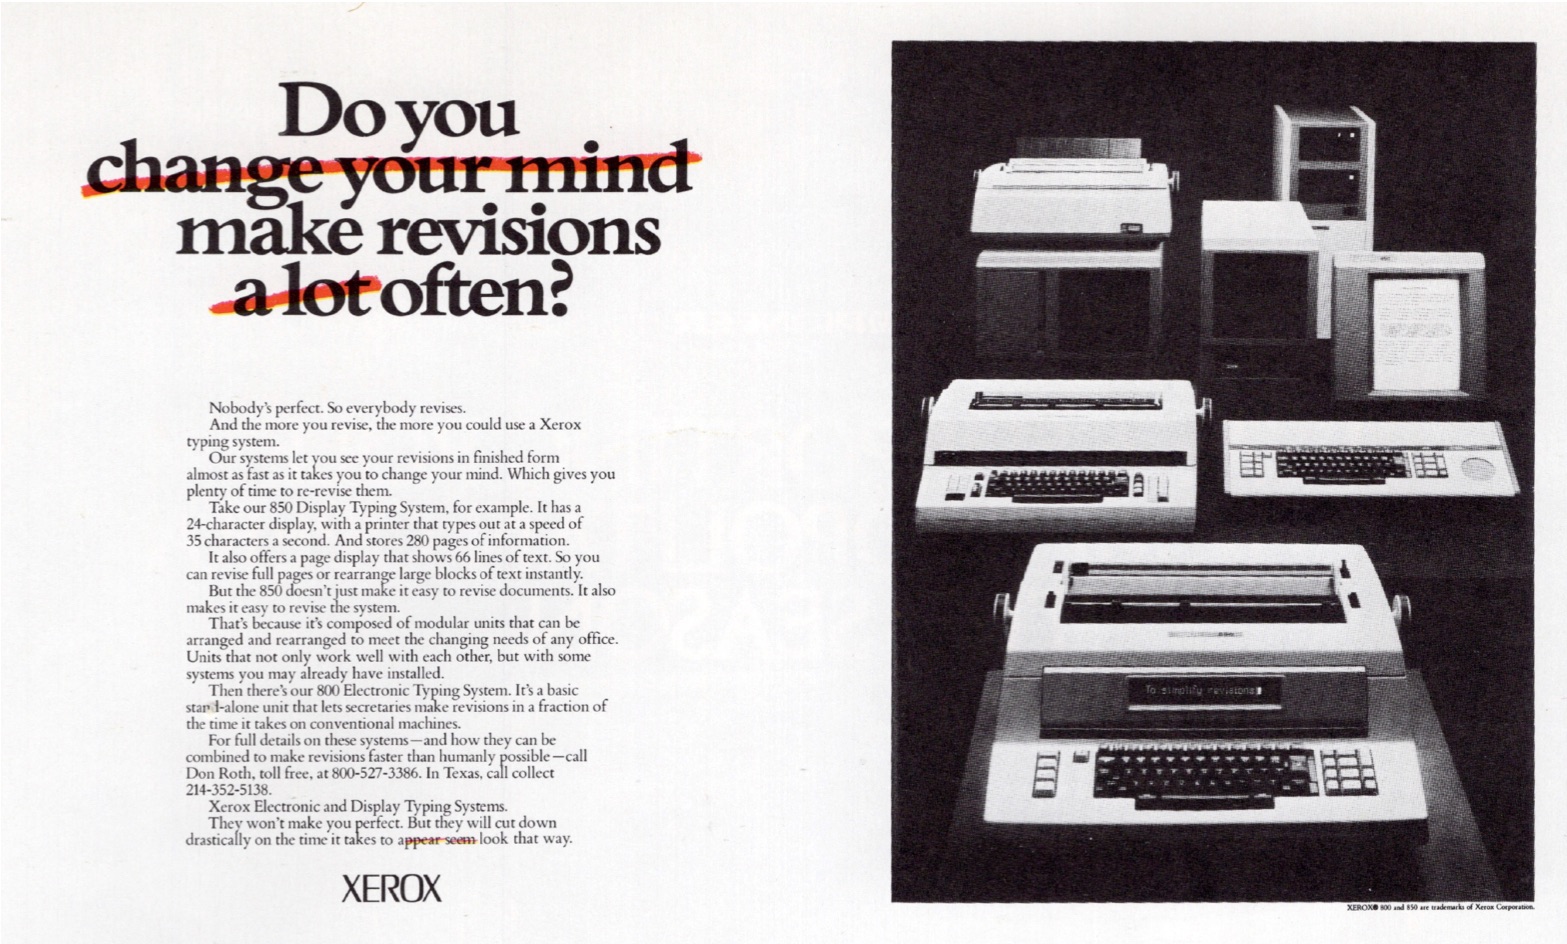 Xerox Print Ad